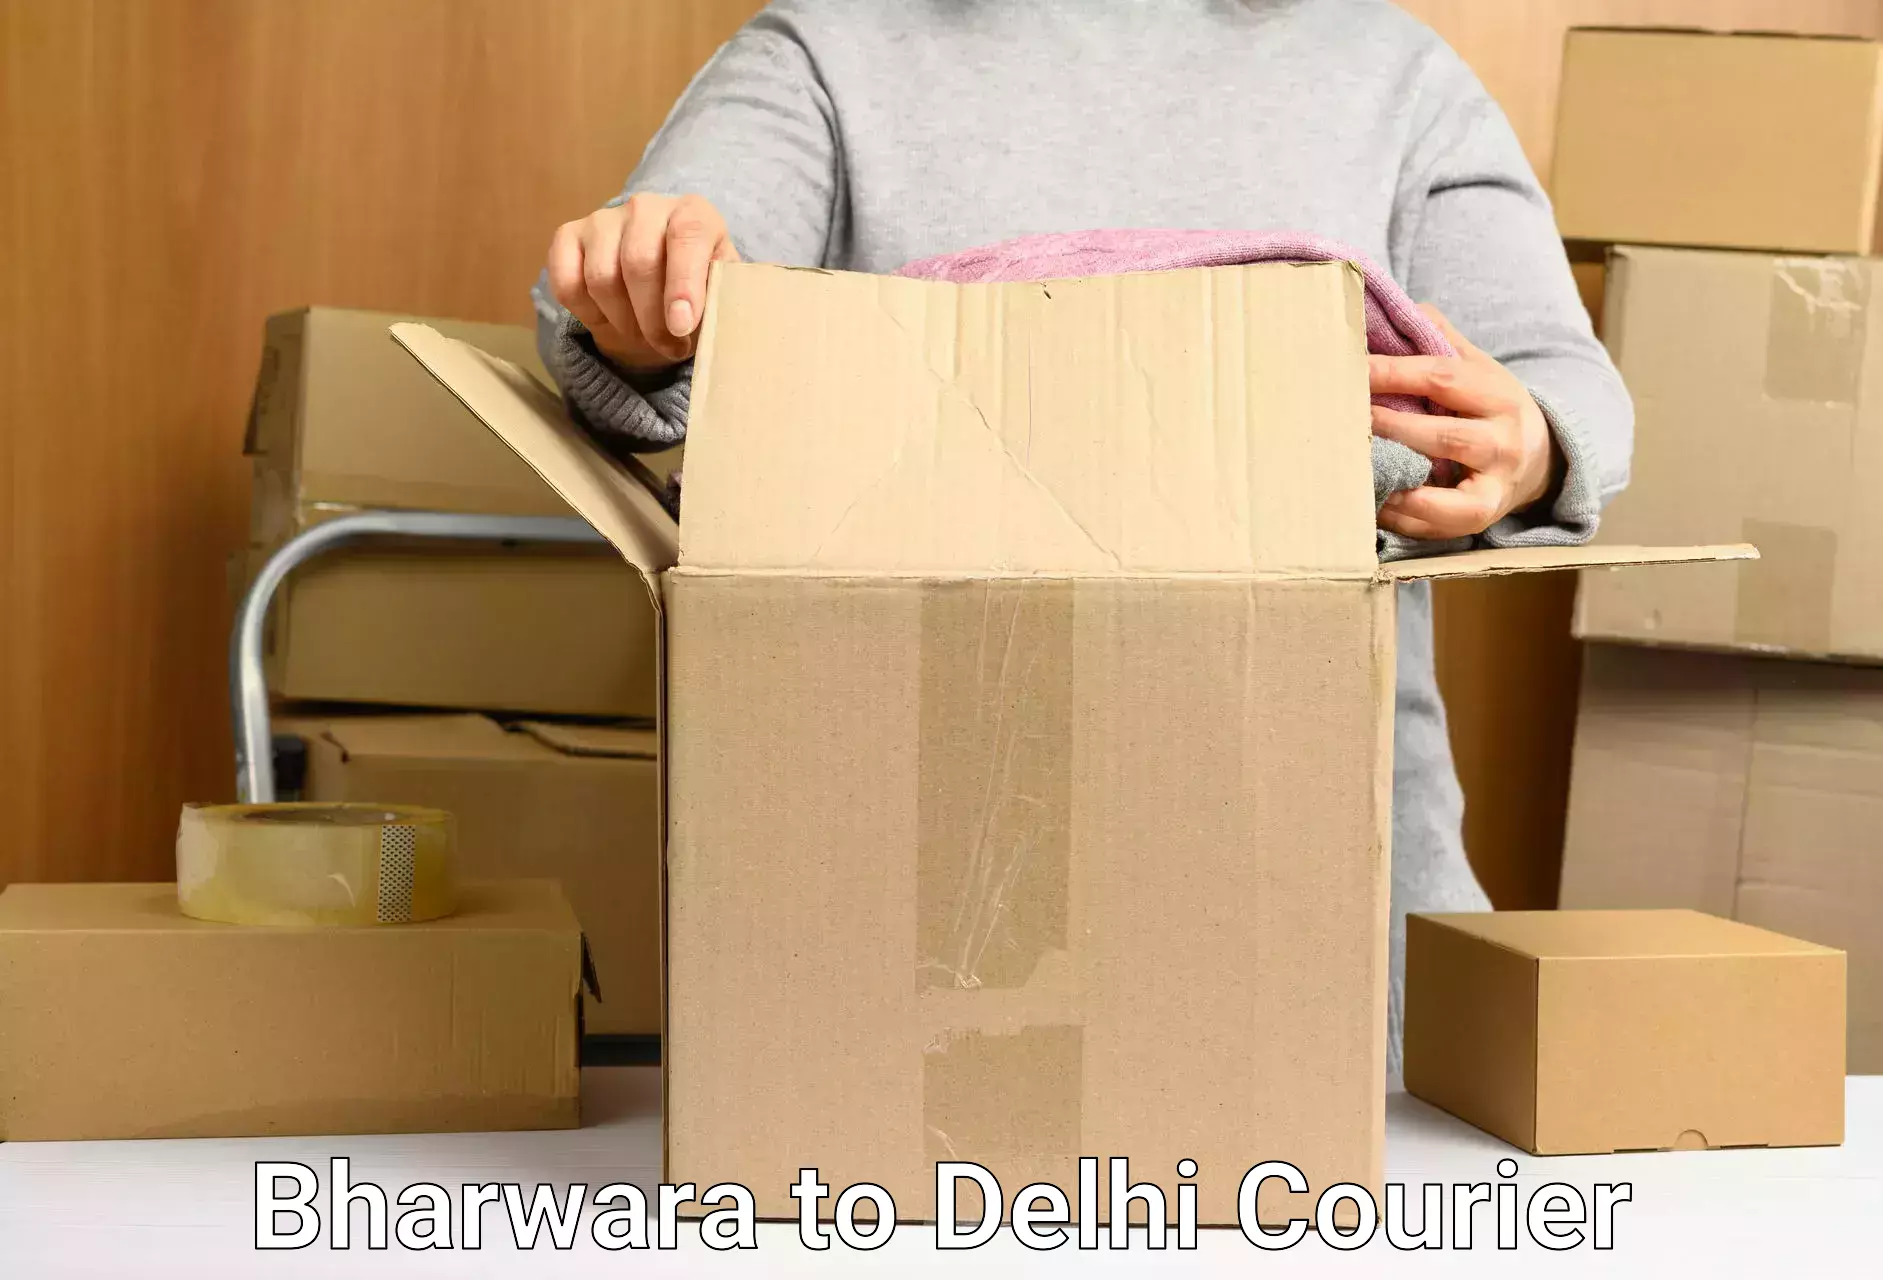 User-friendly courier app Bharwara to Delhi